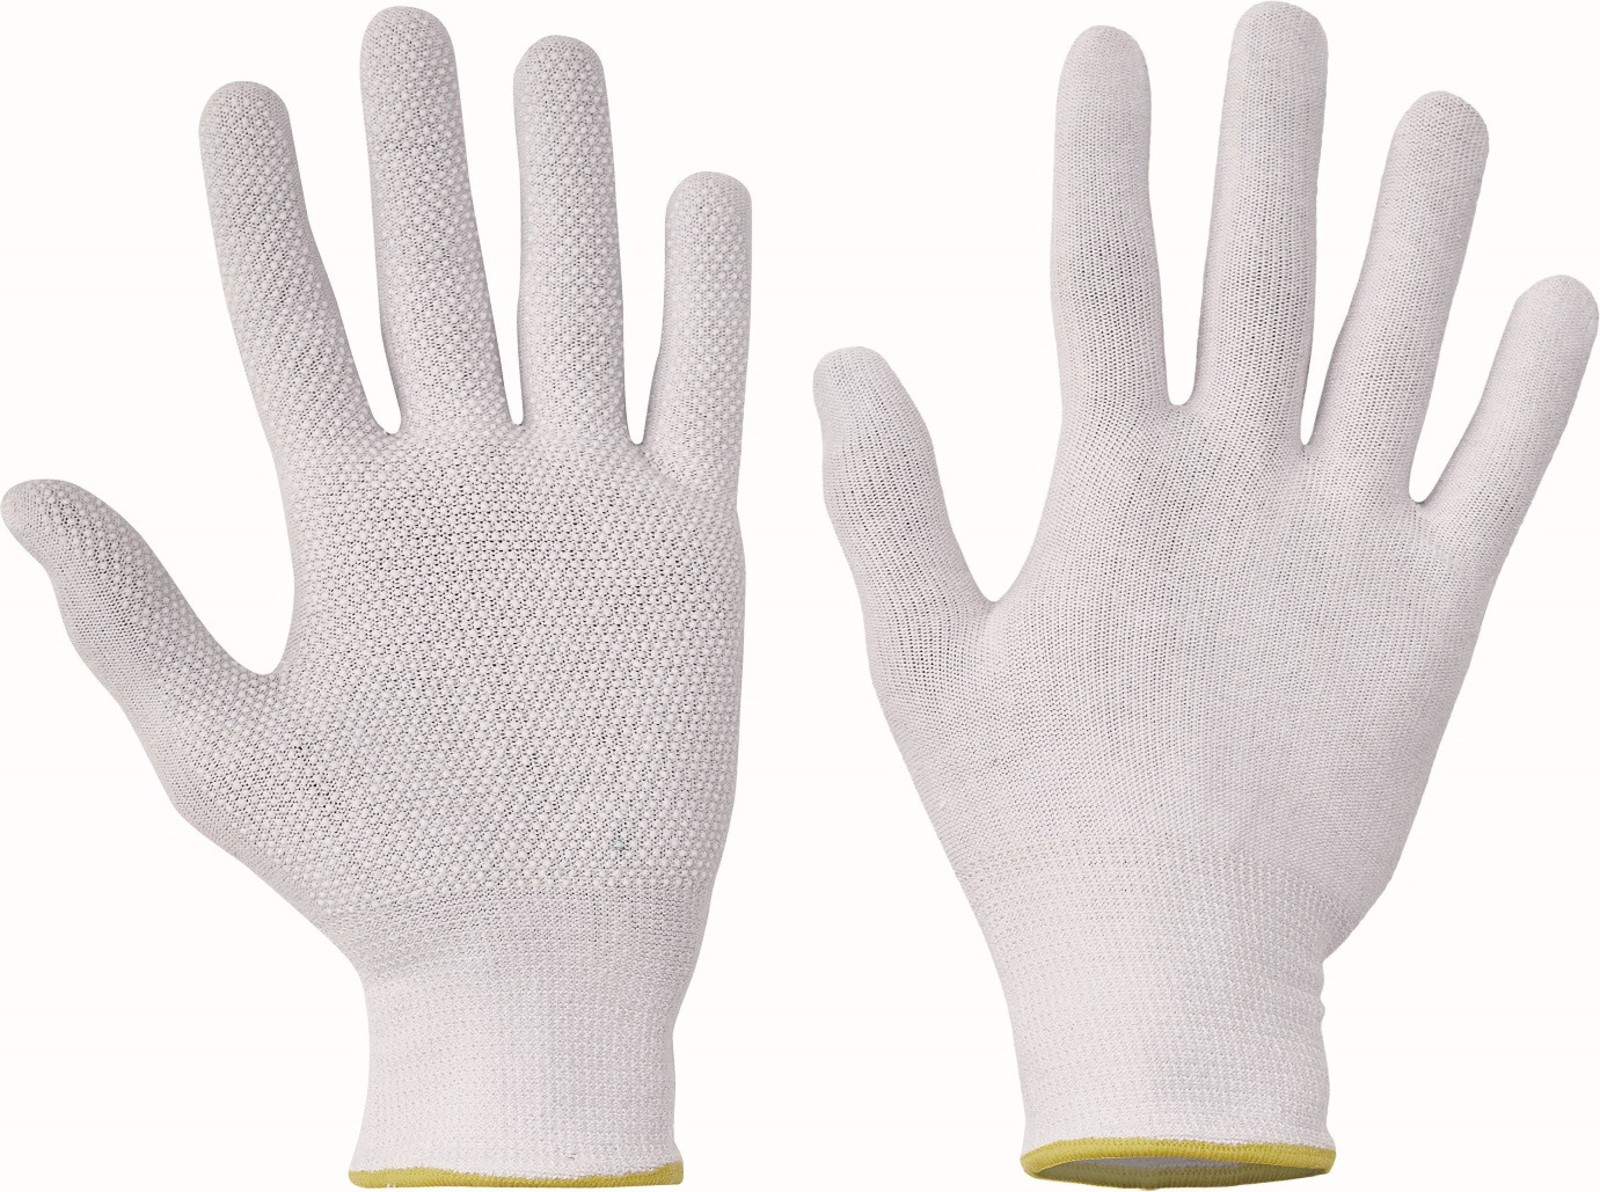 Pracovné rukavice Bustard Evo s terčíkmi - veľkosť: 7/S